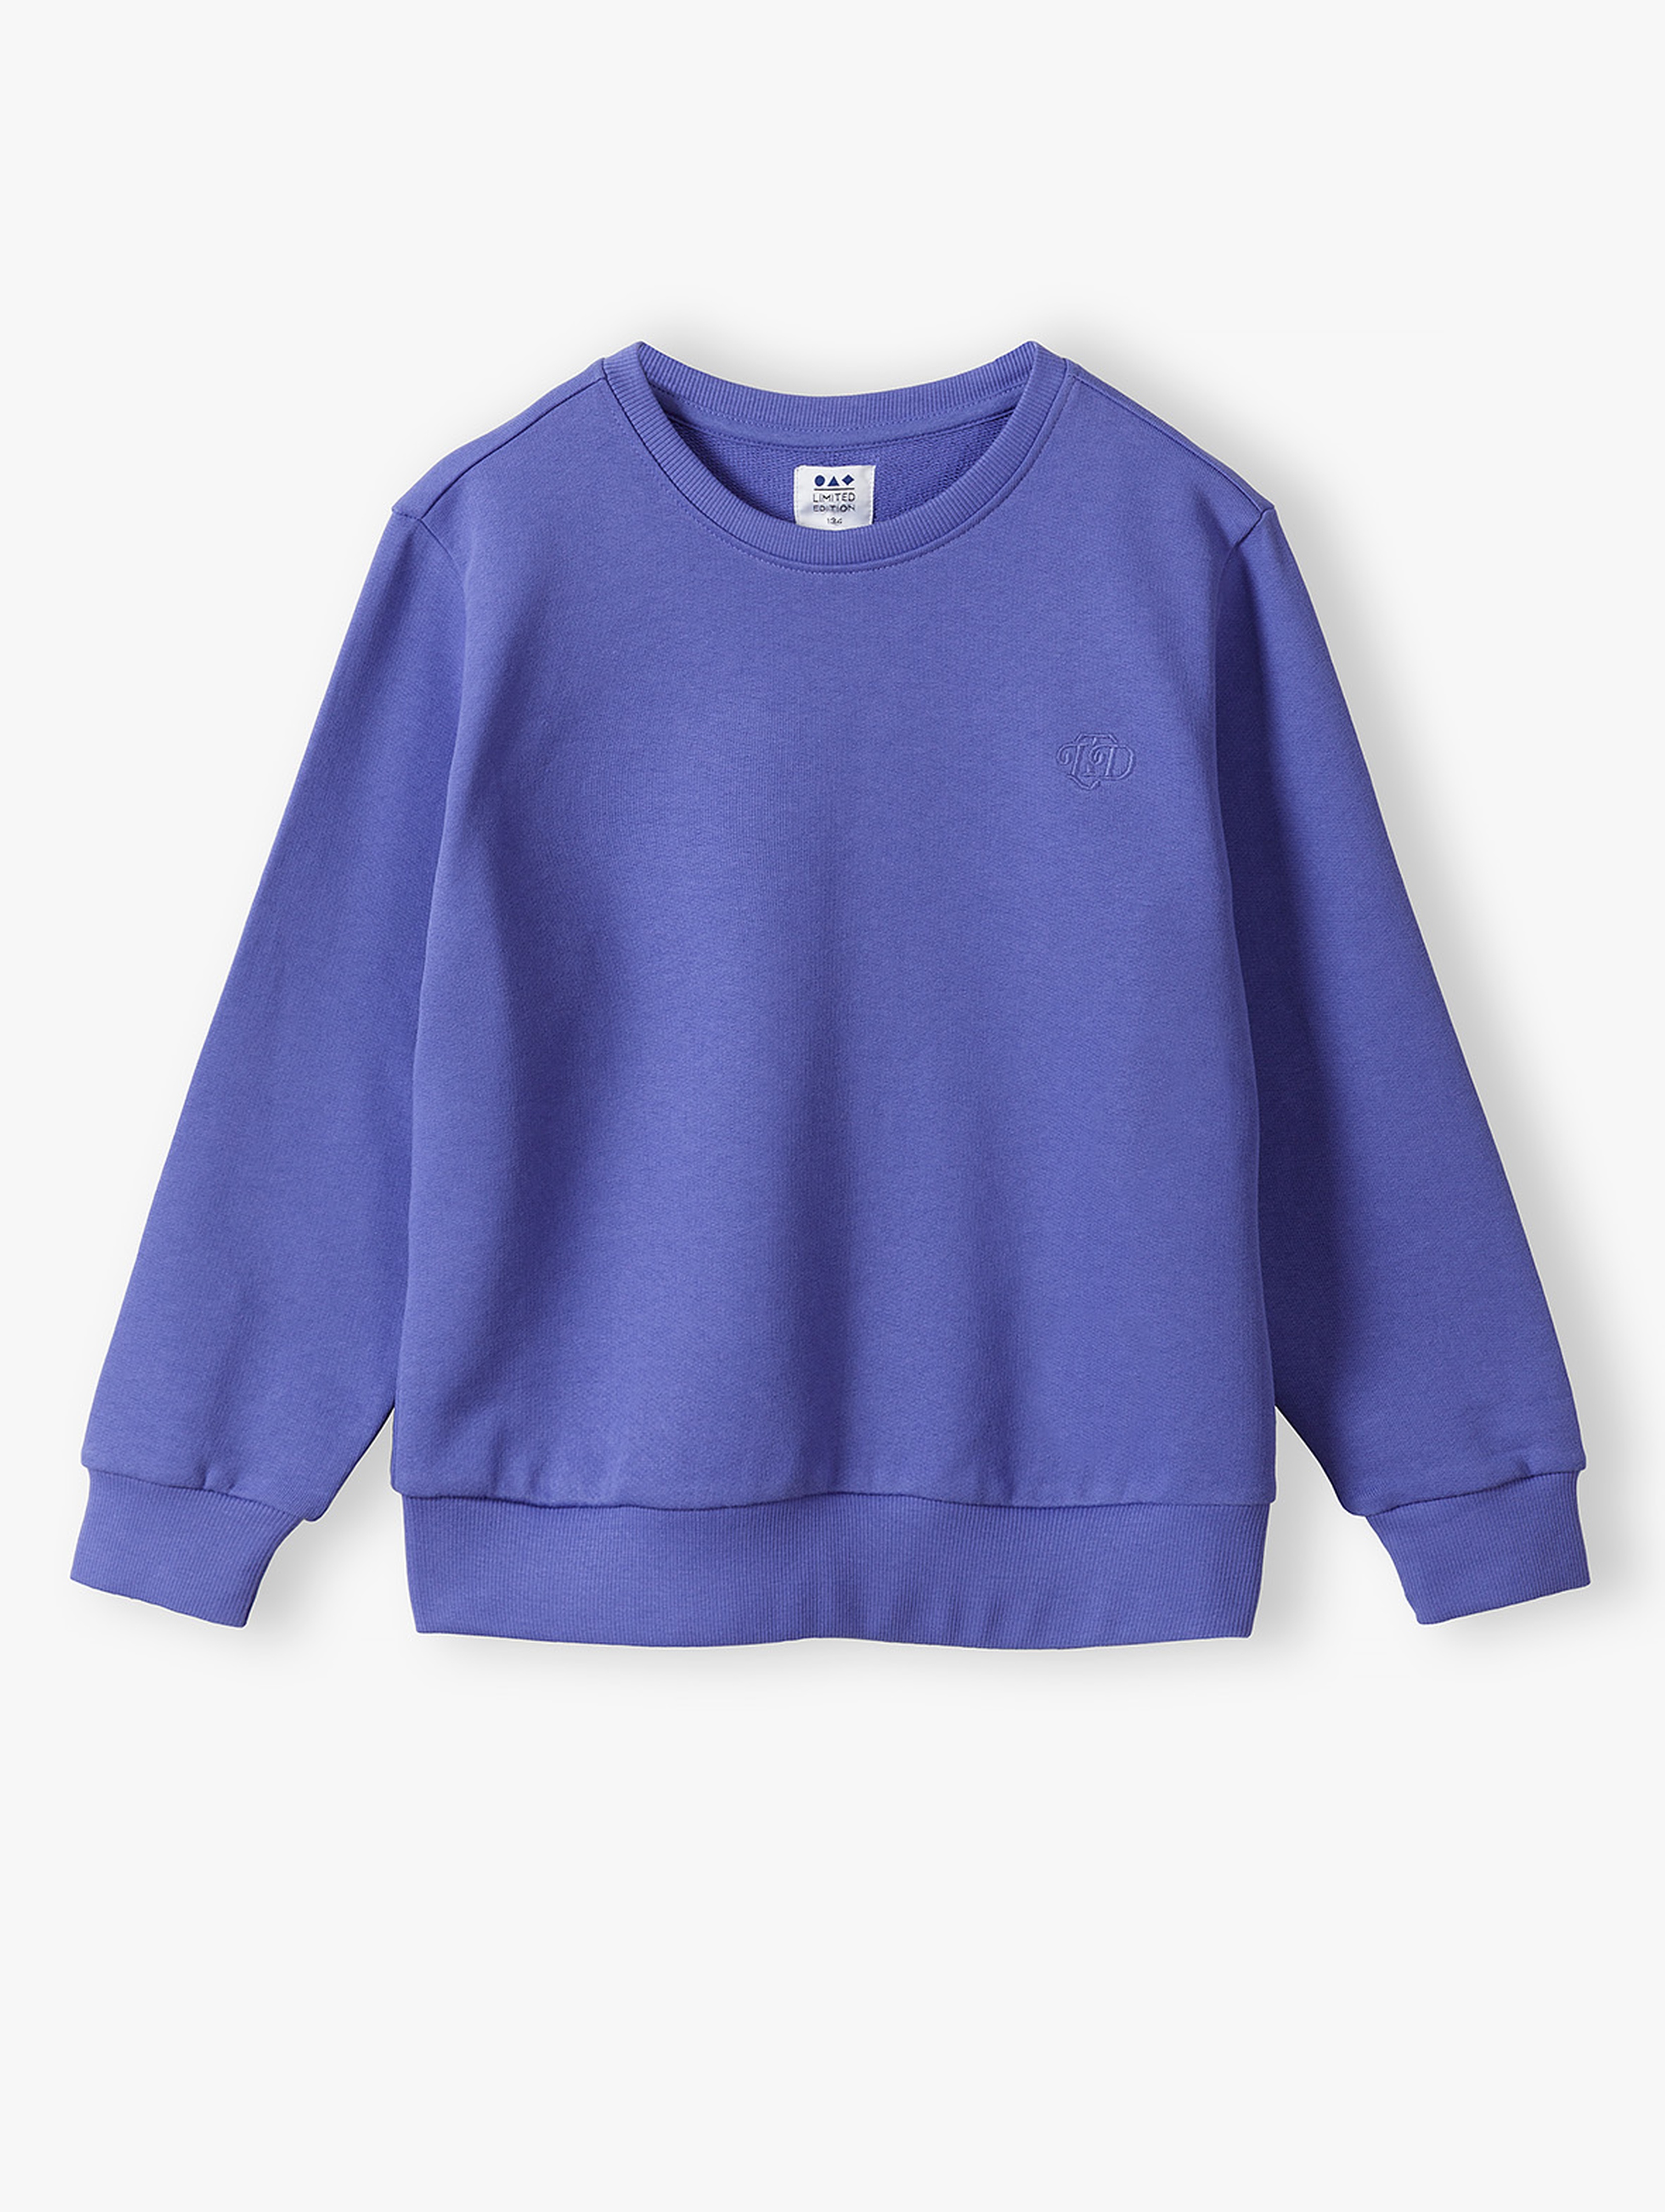 Fioletowa bluza dresowa dla dziecka - unisex - Limited Edition